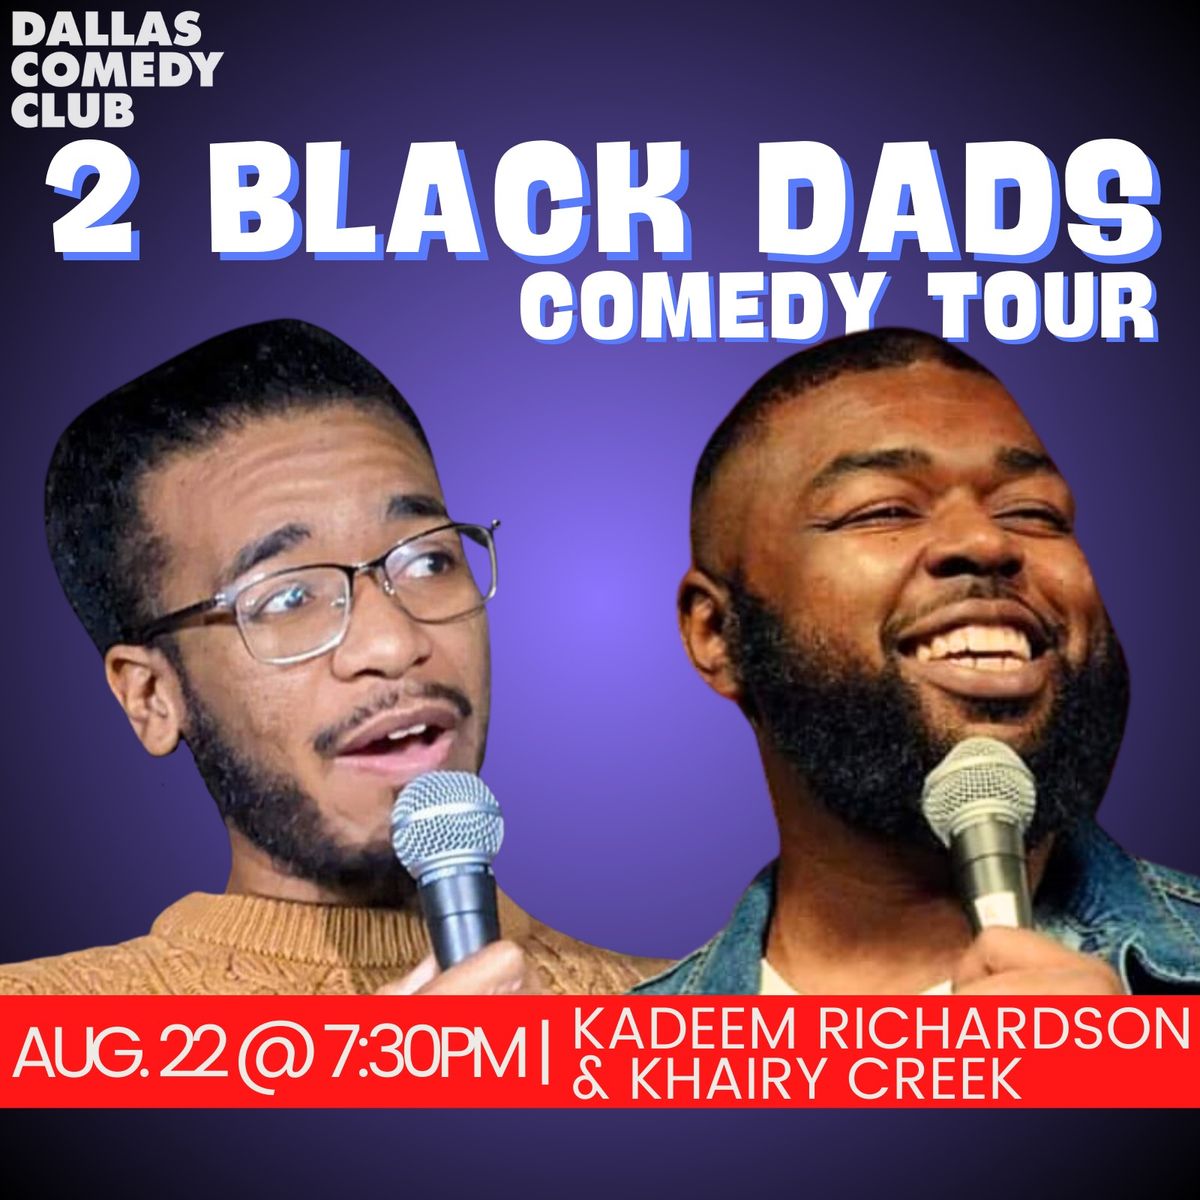 Dallas Comedy Club Presents: 2 Black Dads Comedy Tour